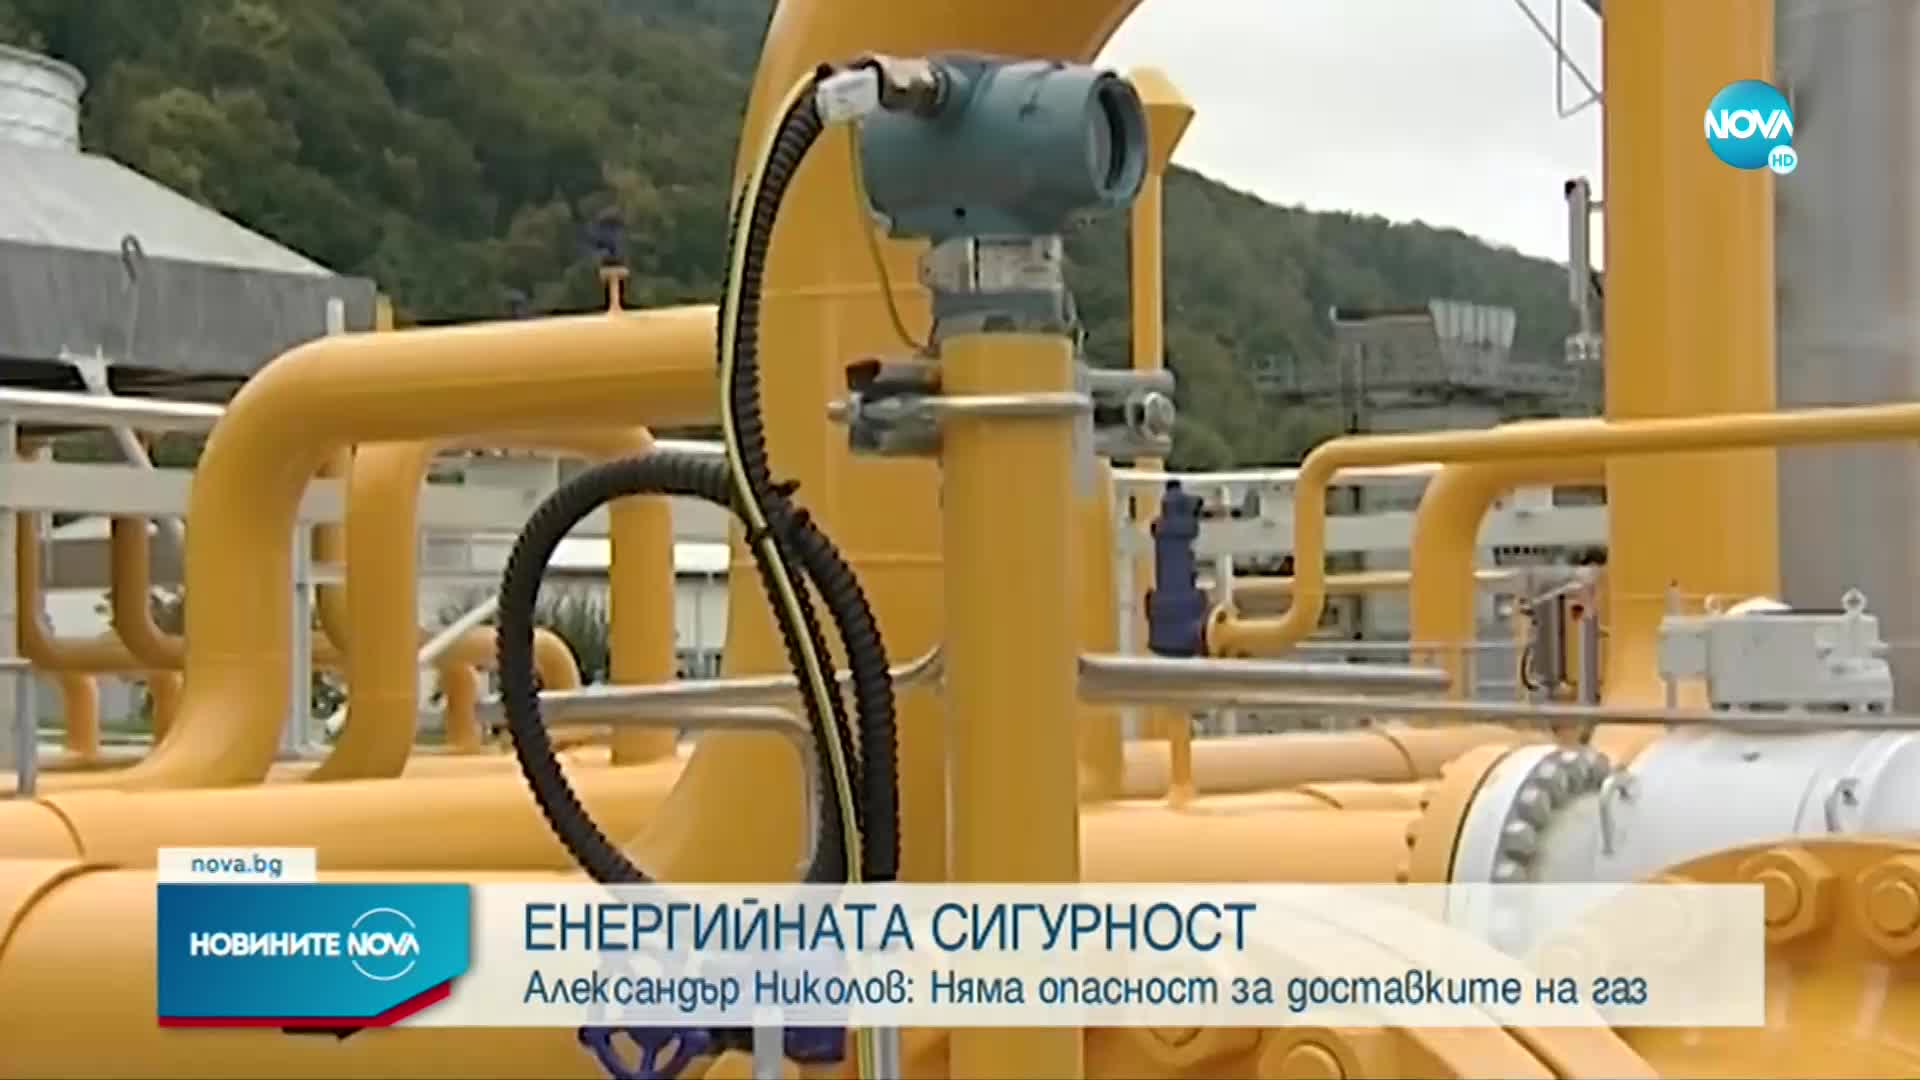 Николов: Няма опасност за доставките на газ